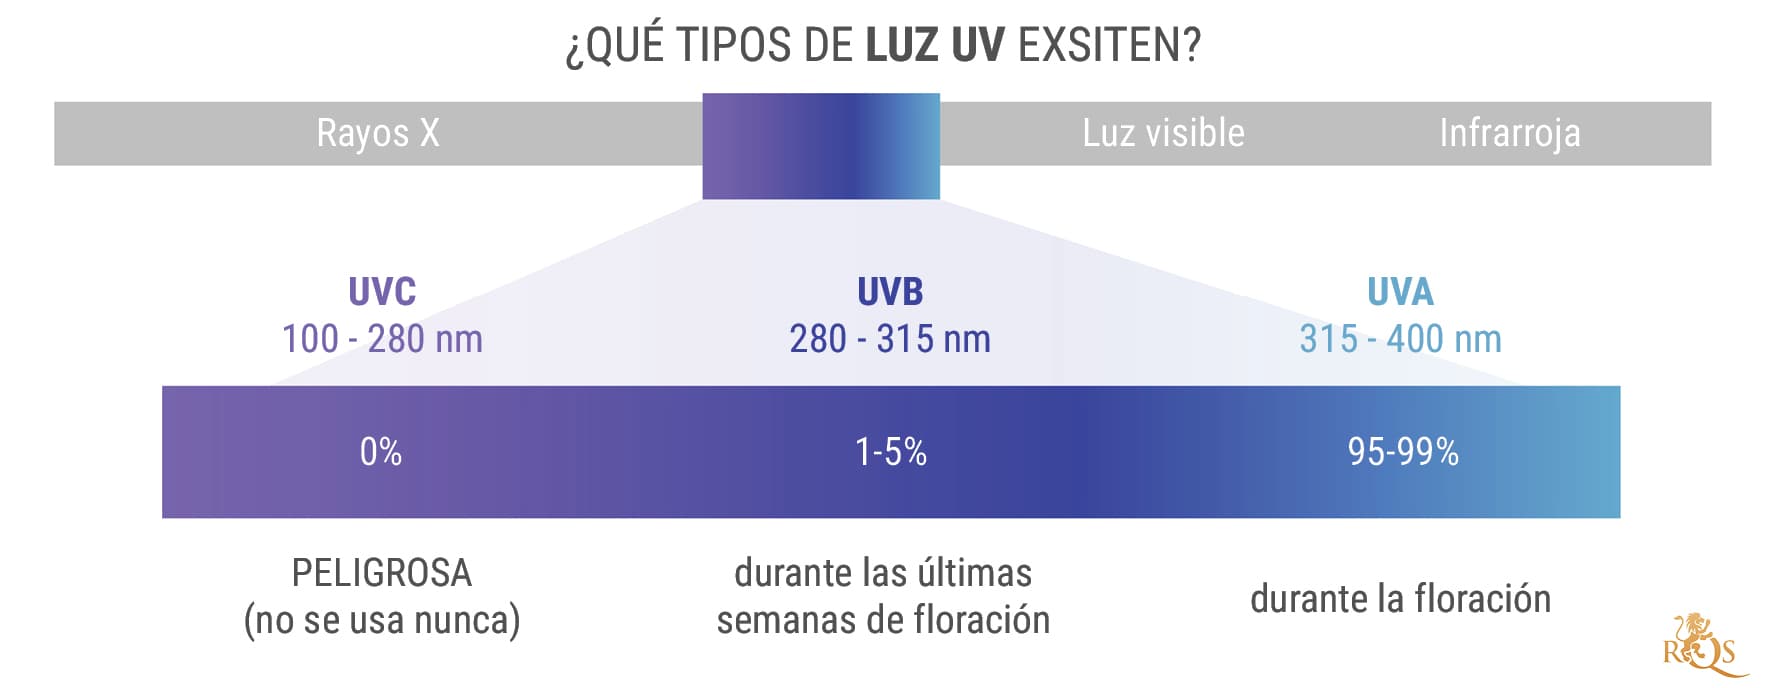 ¿Qué tipos de luz ultravioleta existen?